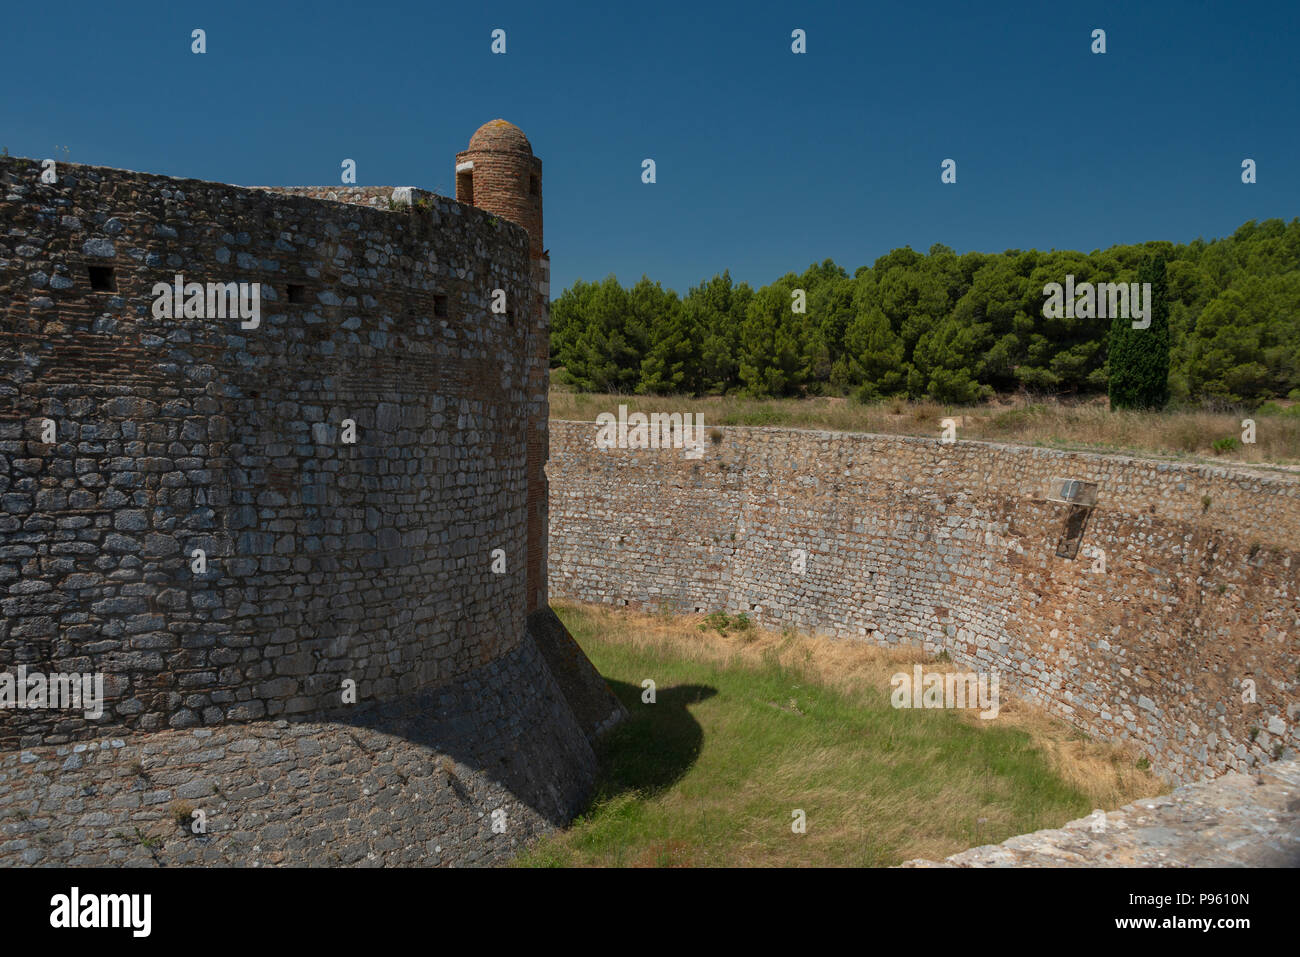 Teil der mittelalterlichen Stadtbefestigung von Chateau Salse, in den Pyrenees Orientales, Frankreich. Stockfoto